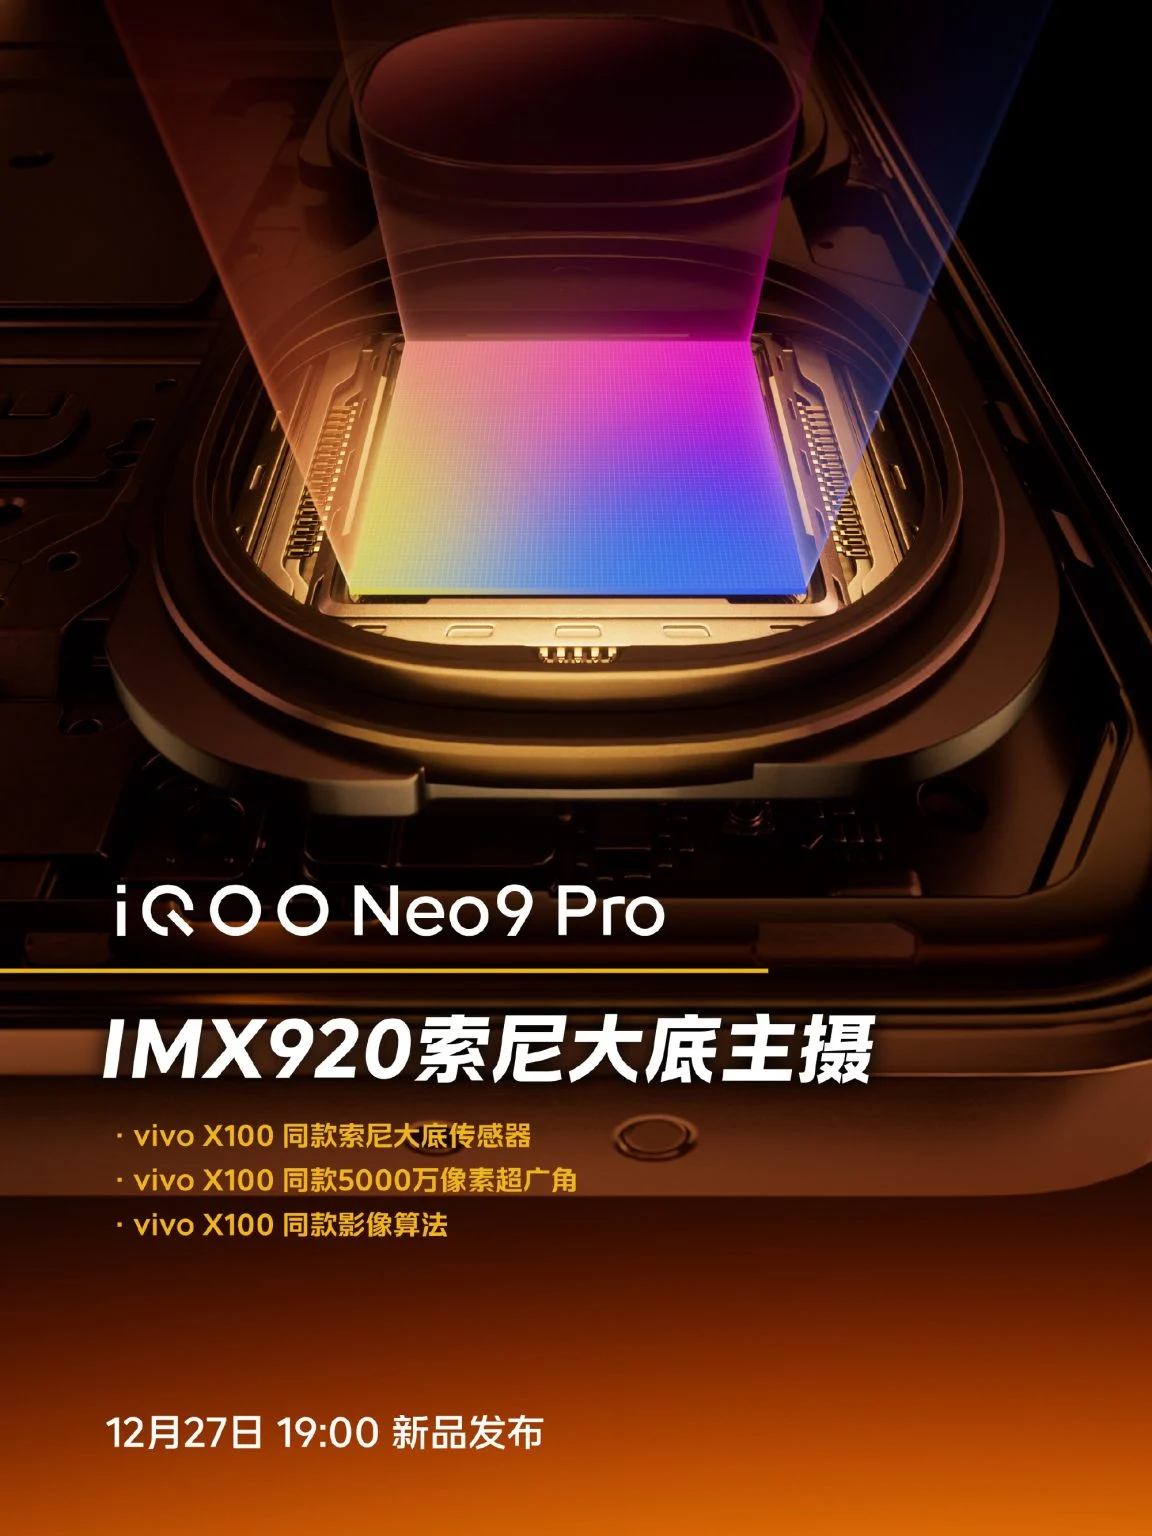 iQOO Neo 9 Pro features